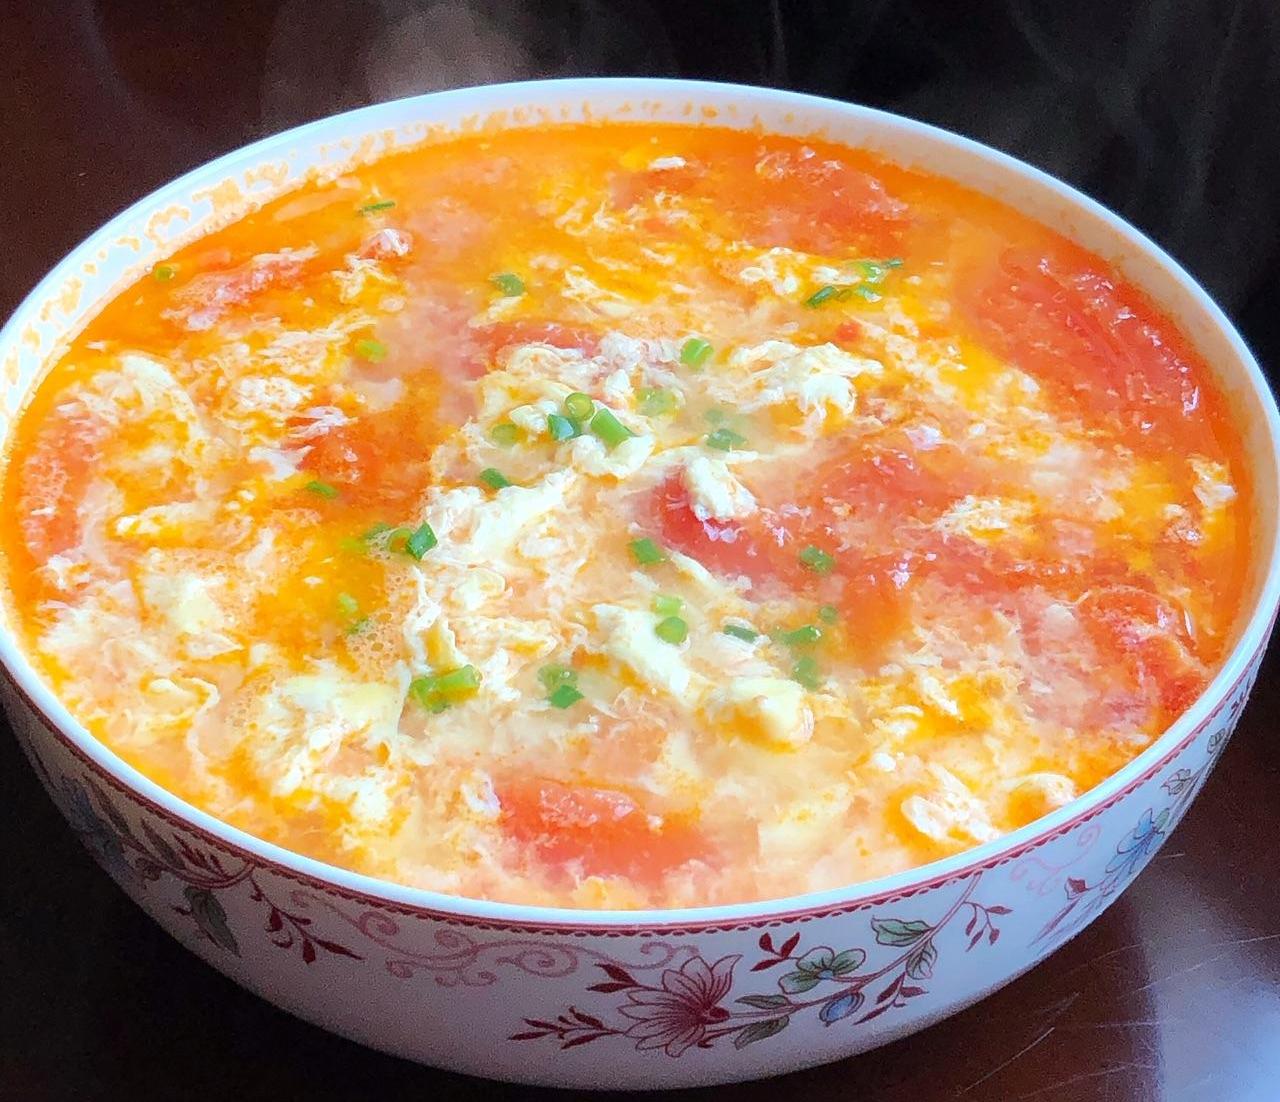 西红柿鸡蛋汤,一道经典家常菜,营养美味,制作简单,一学就会